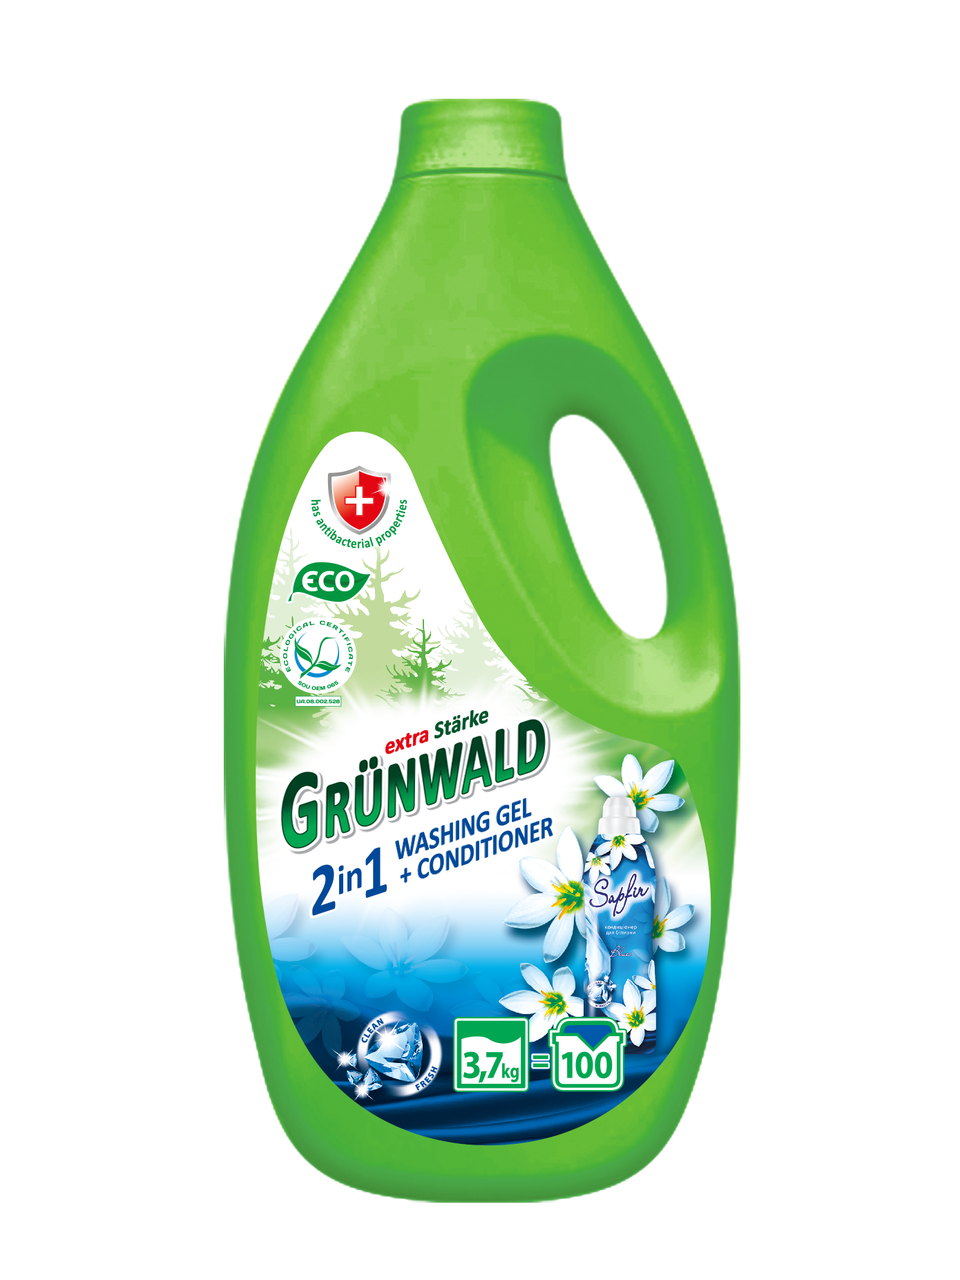 Grunwald 2 in 1, гель для прання кольорових та білих речей, 3,7кг/100 циклів прання